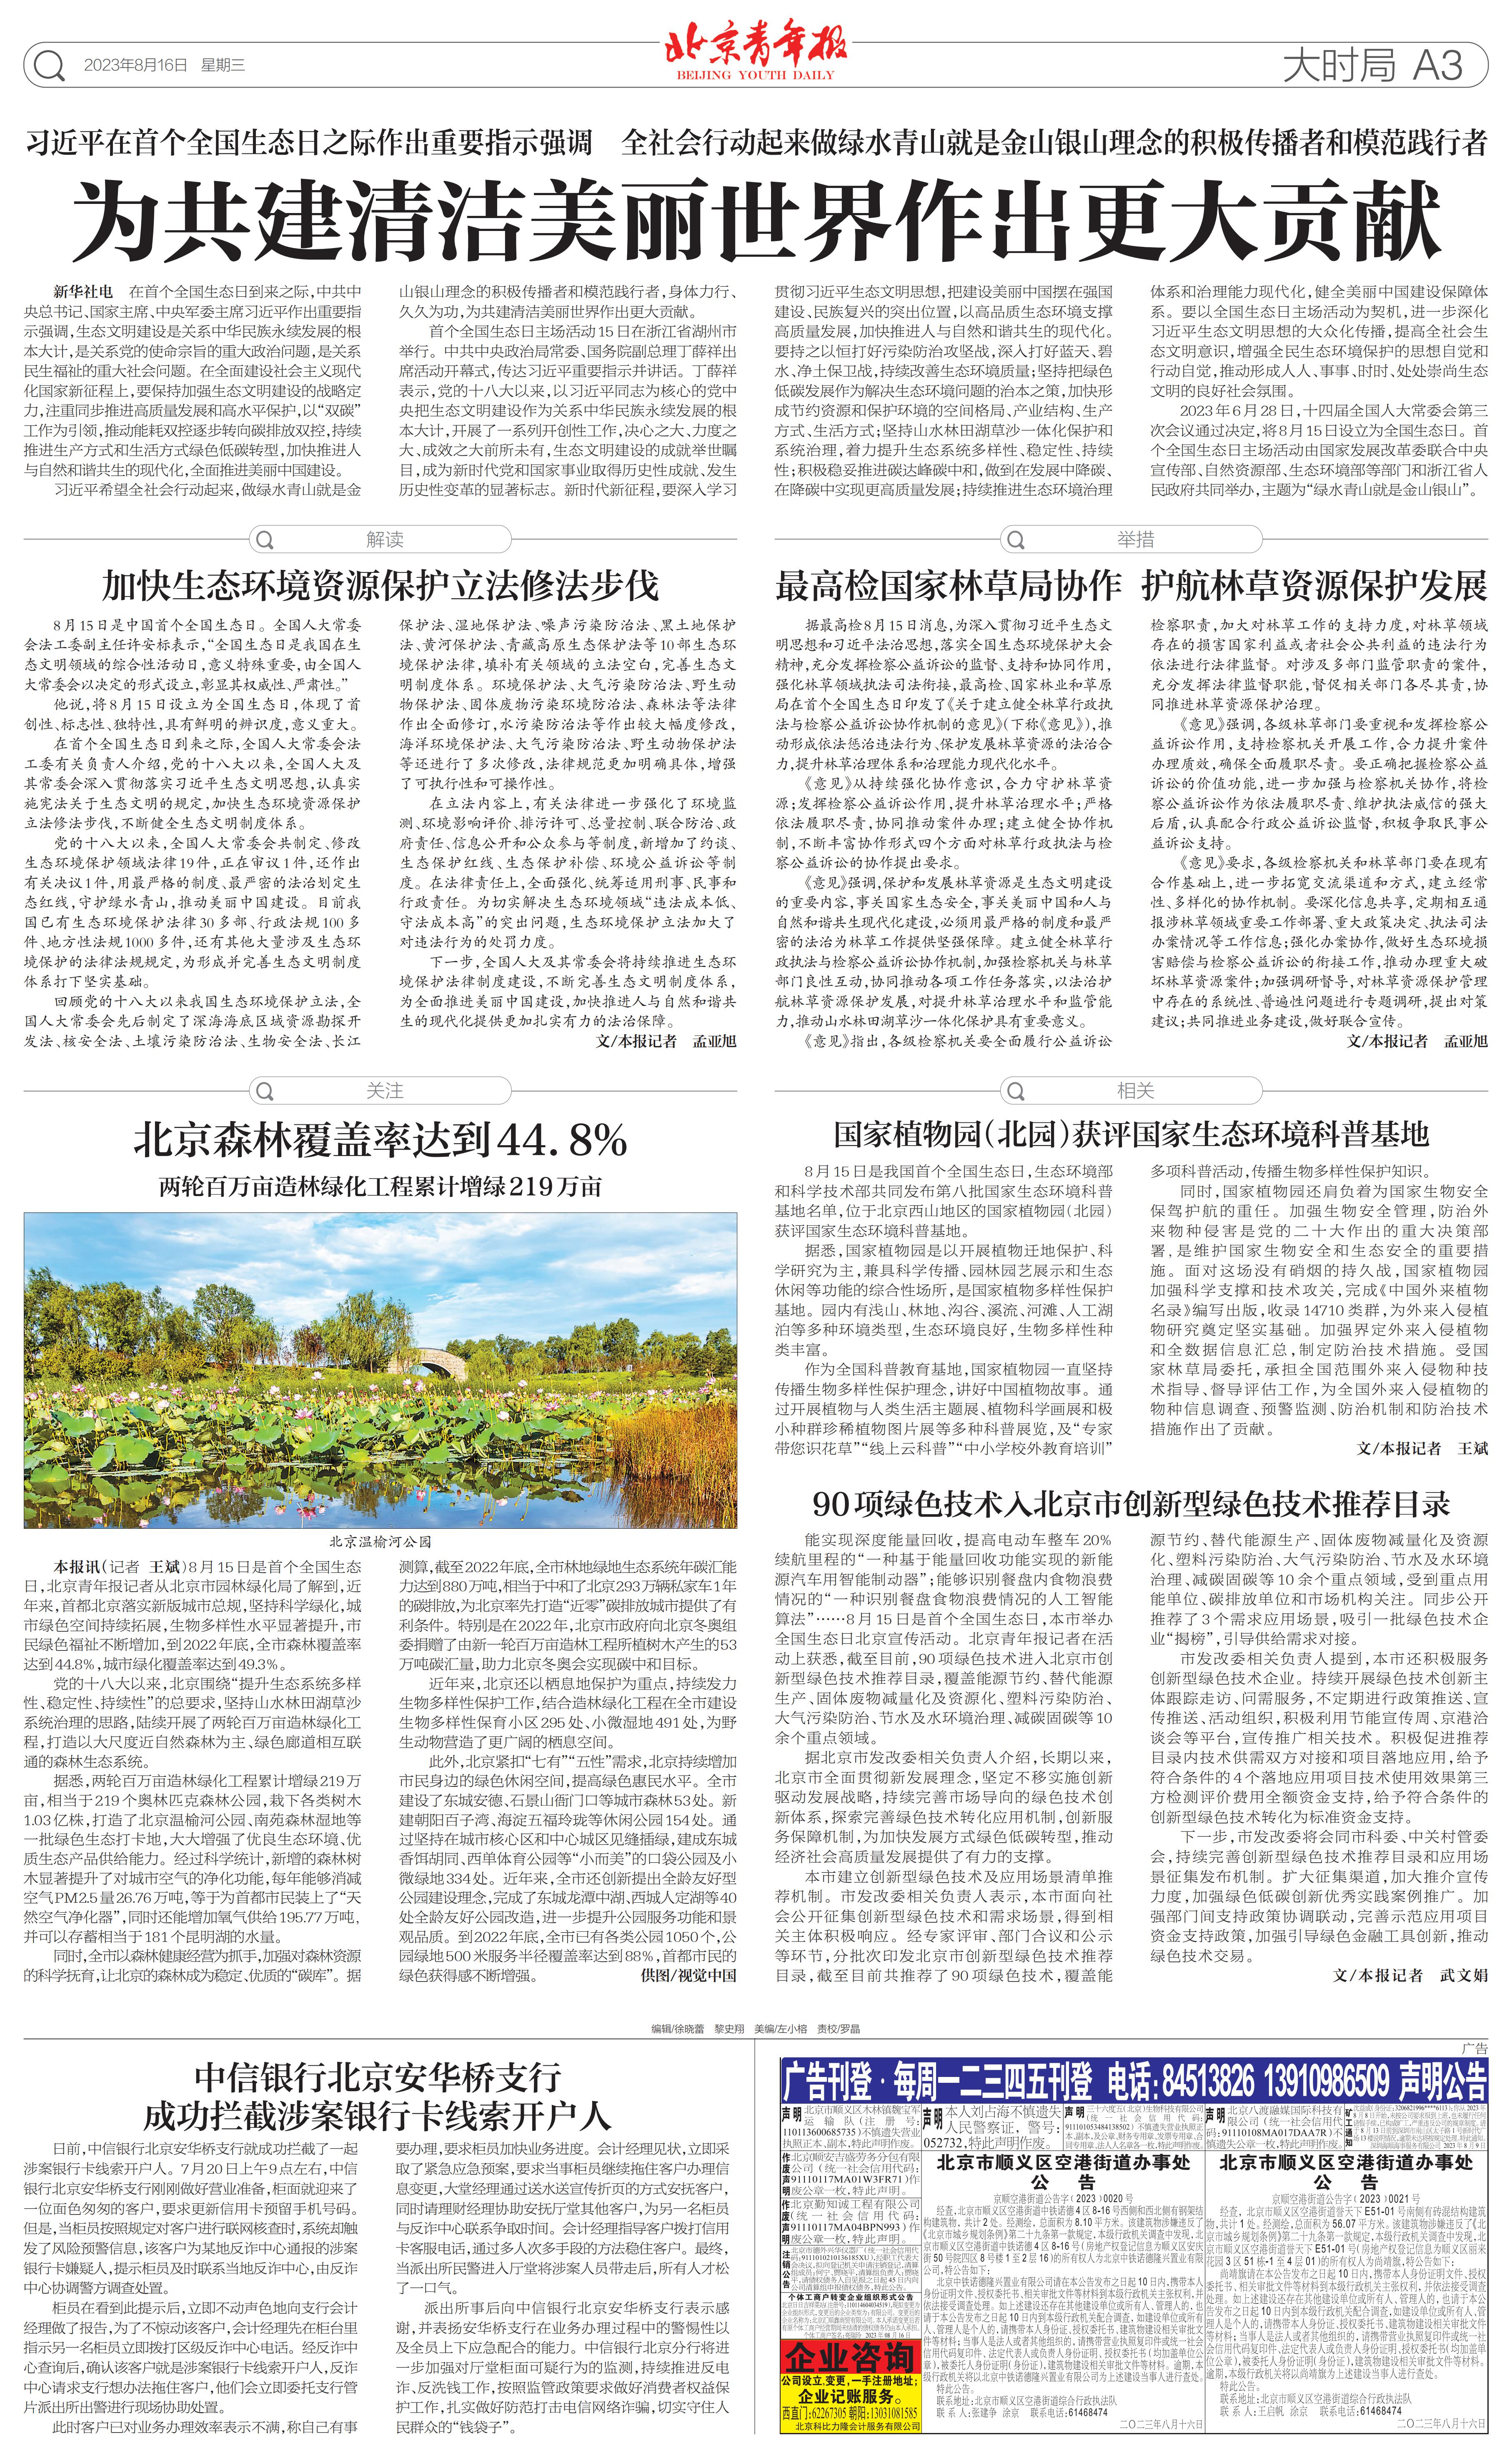 0815北京青年报-北京森林覆盖率达到44.8%_00.jpg